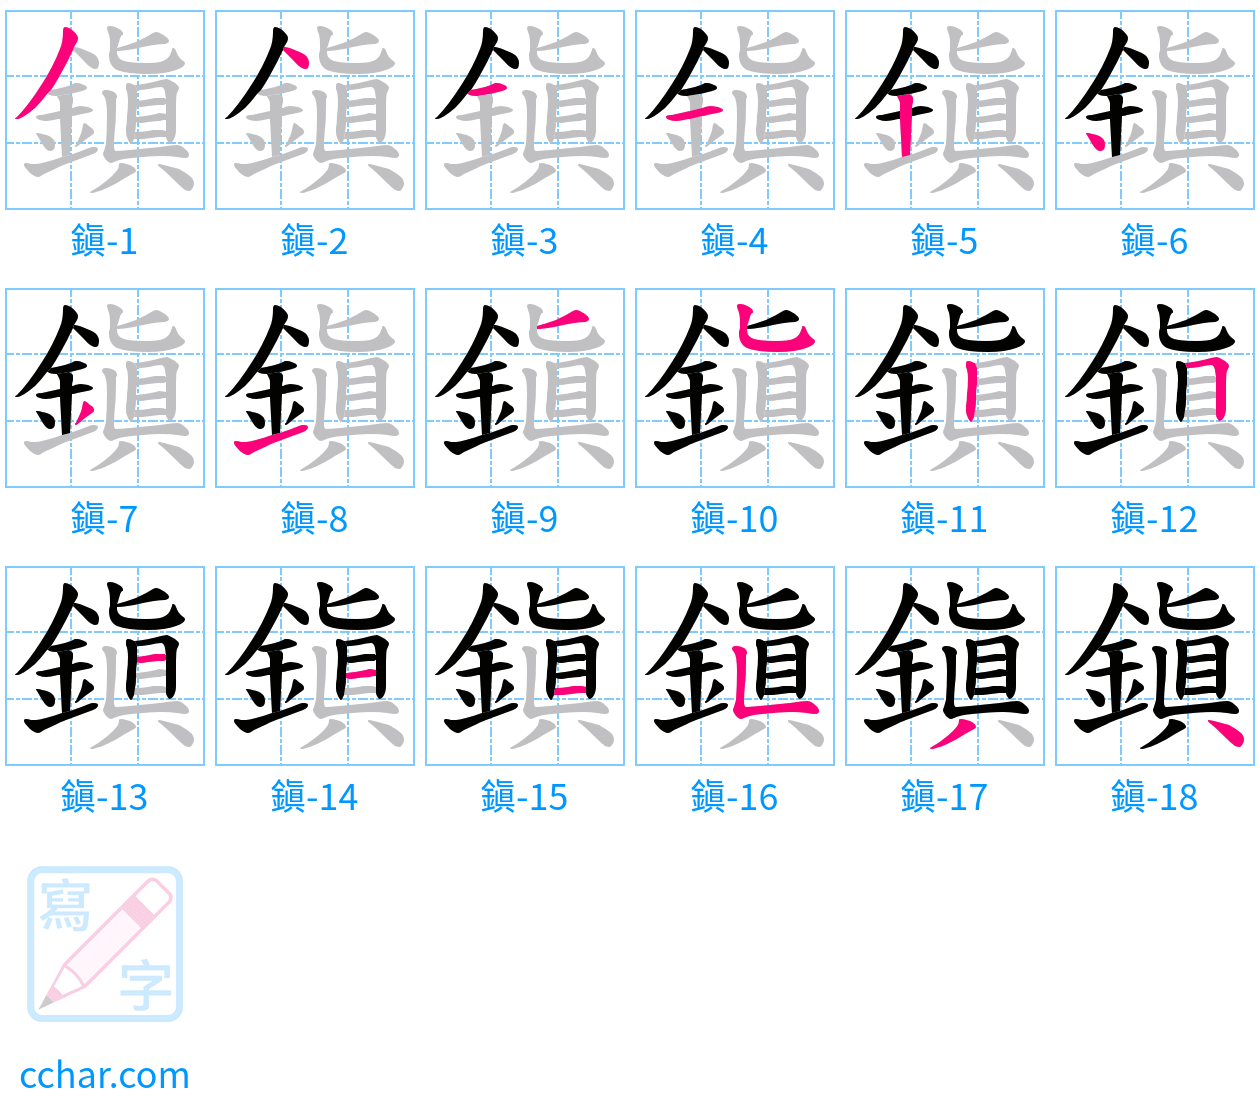 鎭 stroke order step-by-step diagram